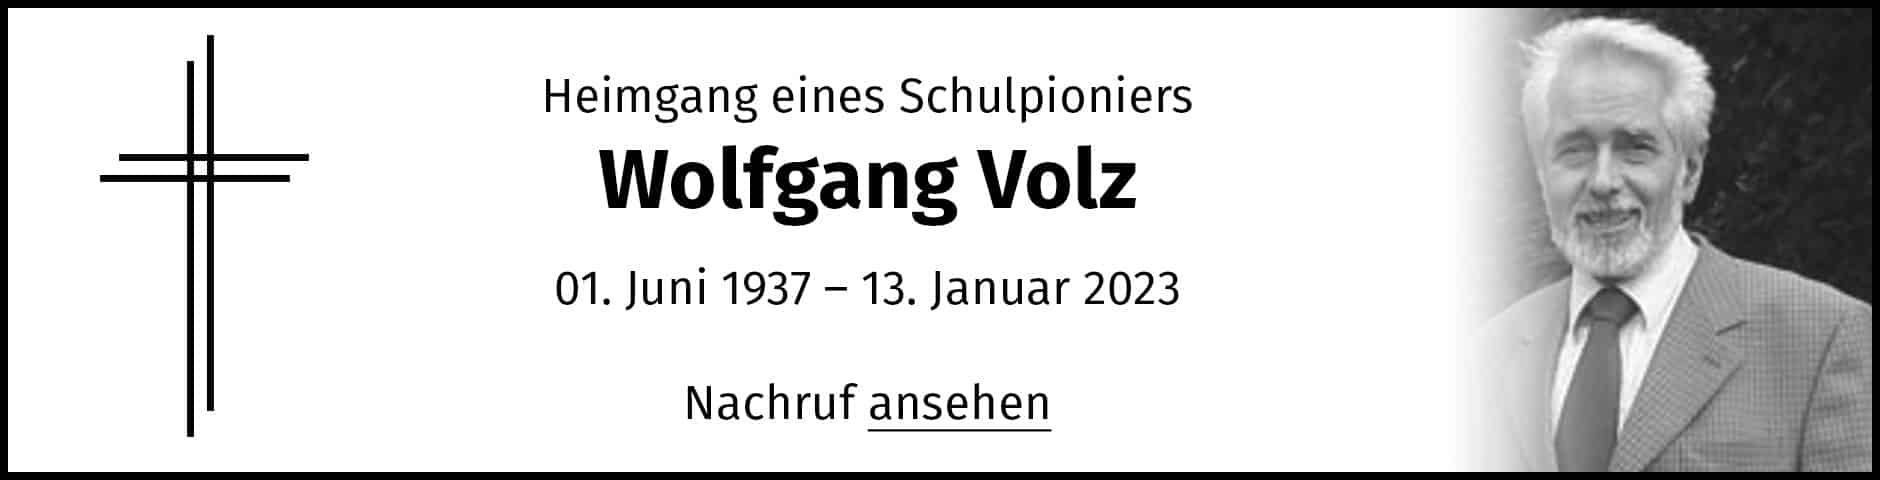 Zum Nachruf von Wolfgang Volz